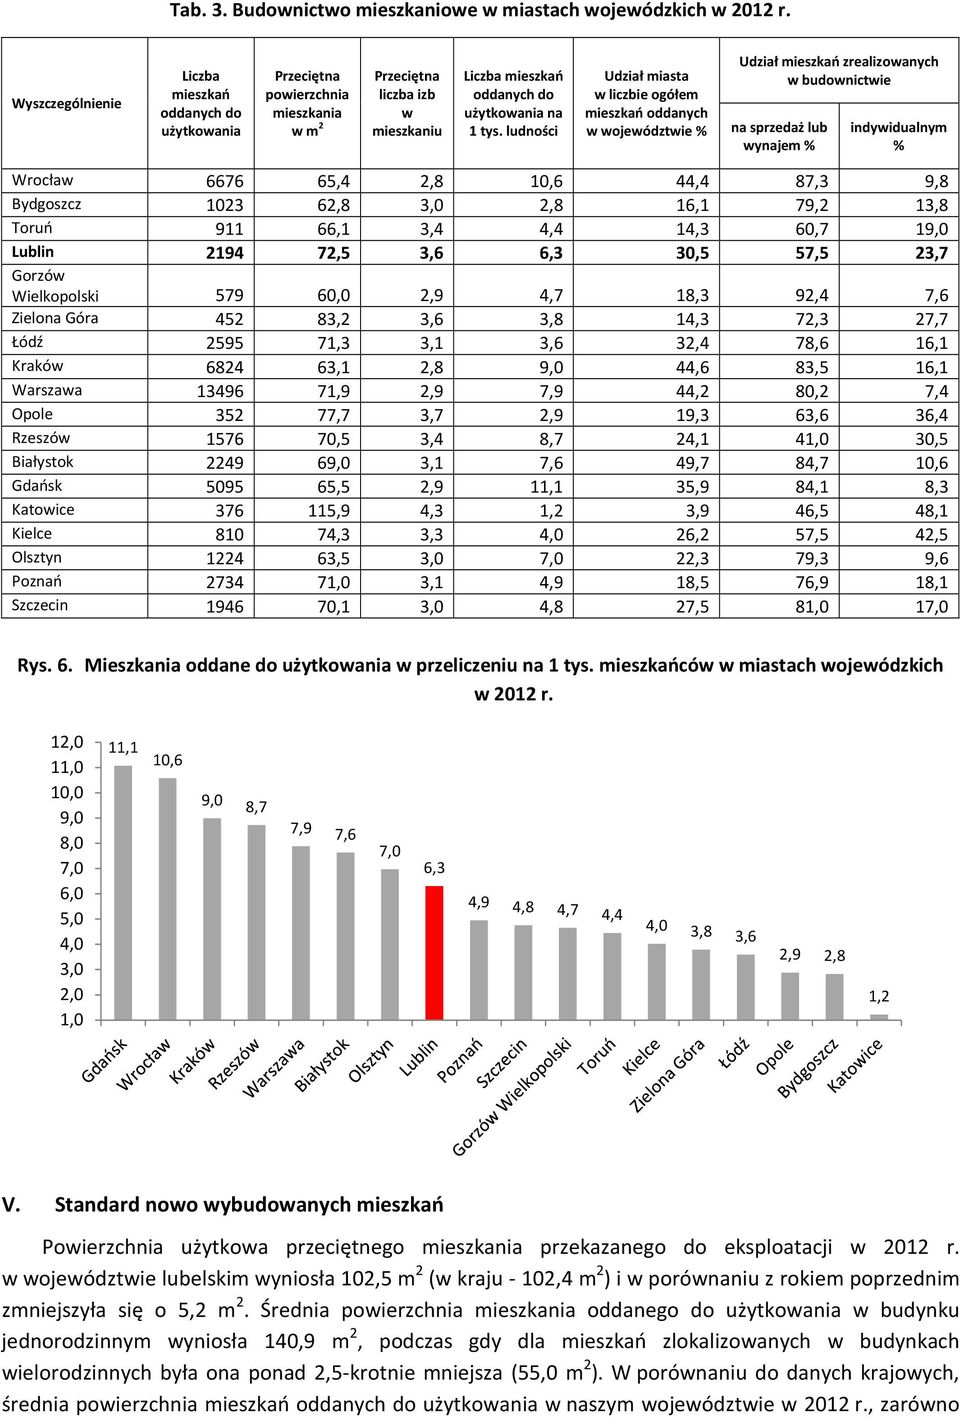 ludności Udział miasta w liczbie ogółem mieszkań oddanych w województwie % Udział mieszkań zrealizowanych w budownictwie na sprzedaż lub wynajem % indywidualnym % Wrocław 6676 65,4 2,8 10,6 44,4 87,3